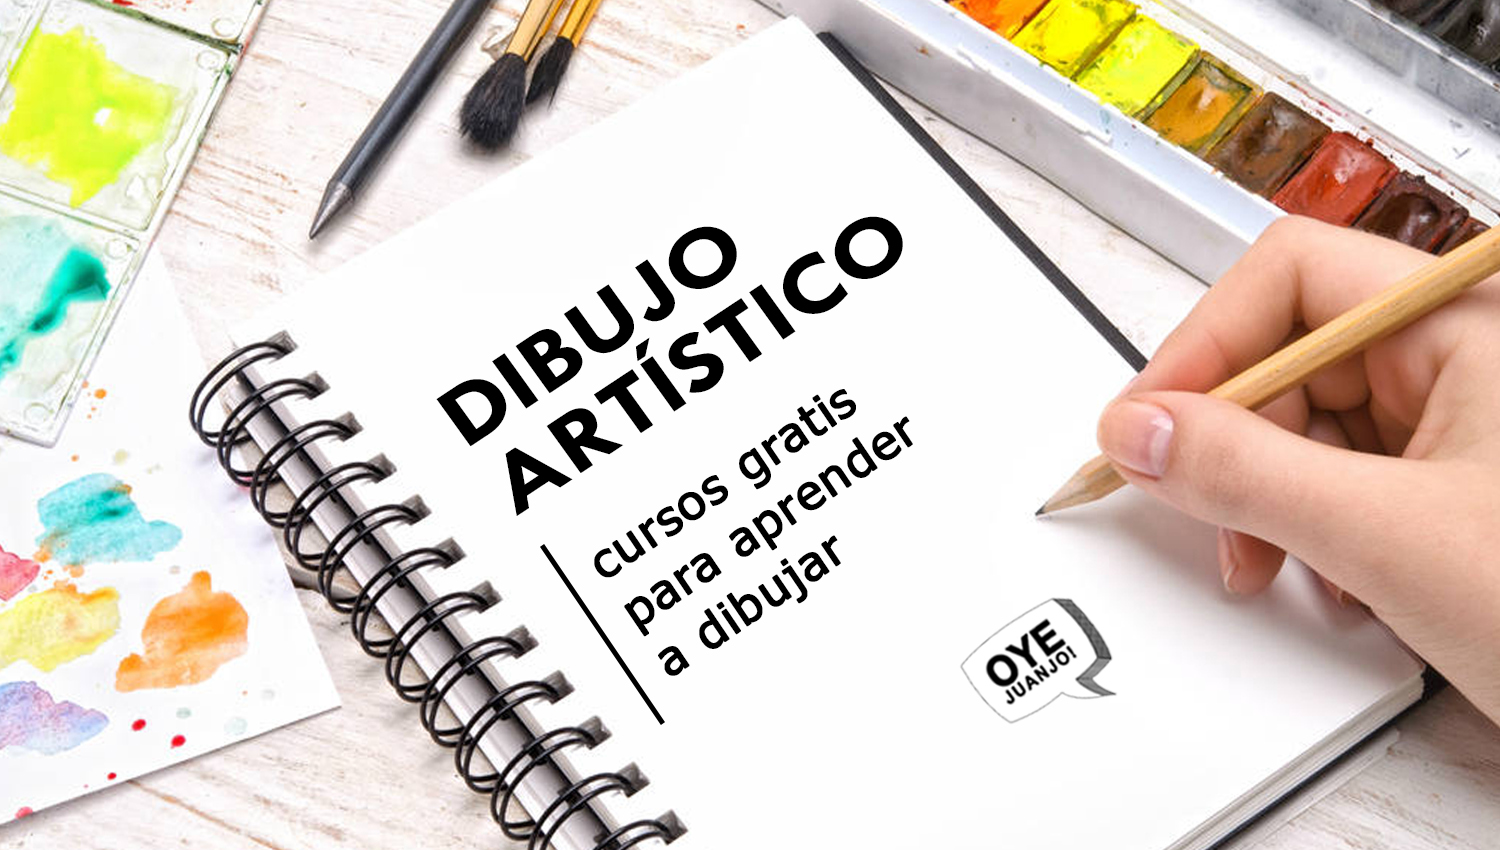 flaco Ladrillo sal 10 cursos online gratis de Dibujo Artístico